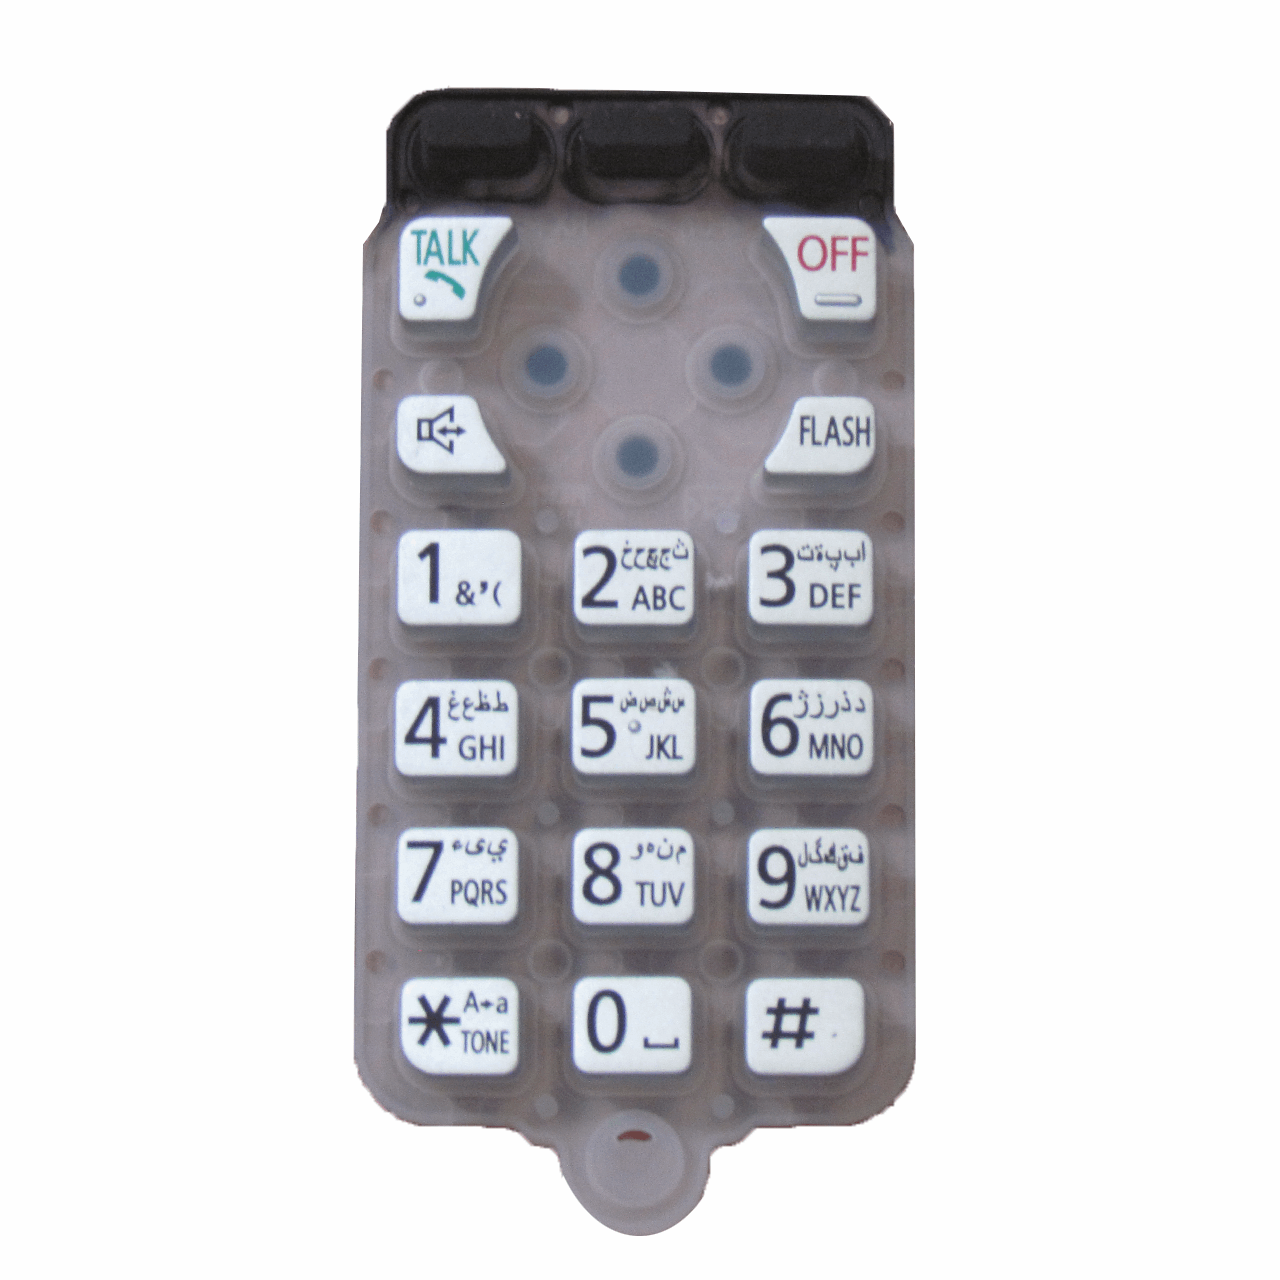 نقد و بررسی شماره گیر اس وای دی مدل 3711-6511 مناسب تلفن پاناسونیک توسط خریداران